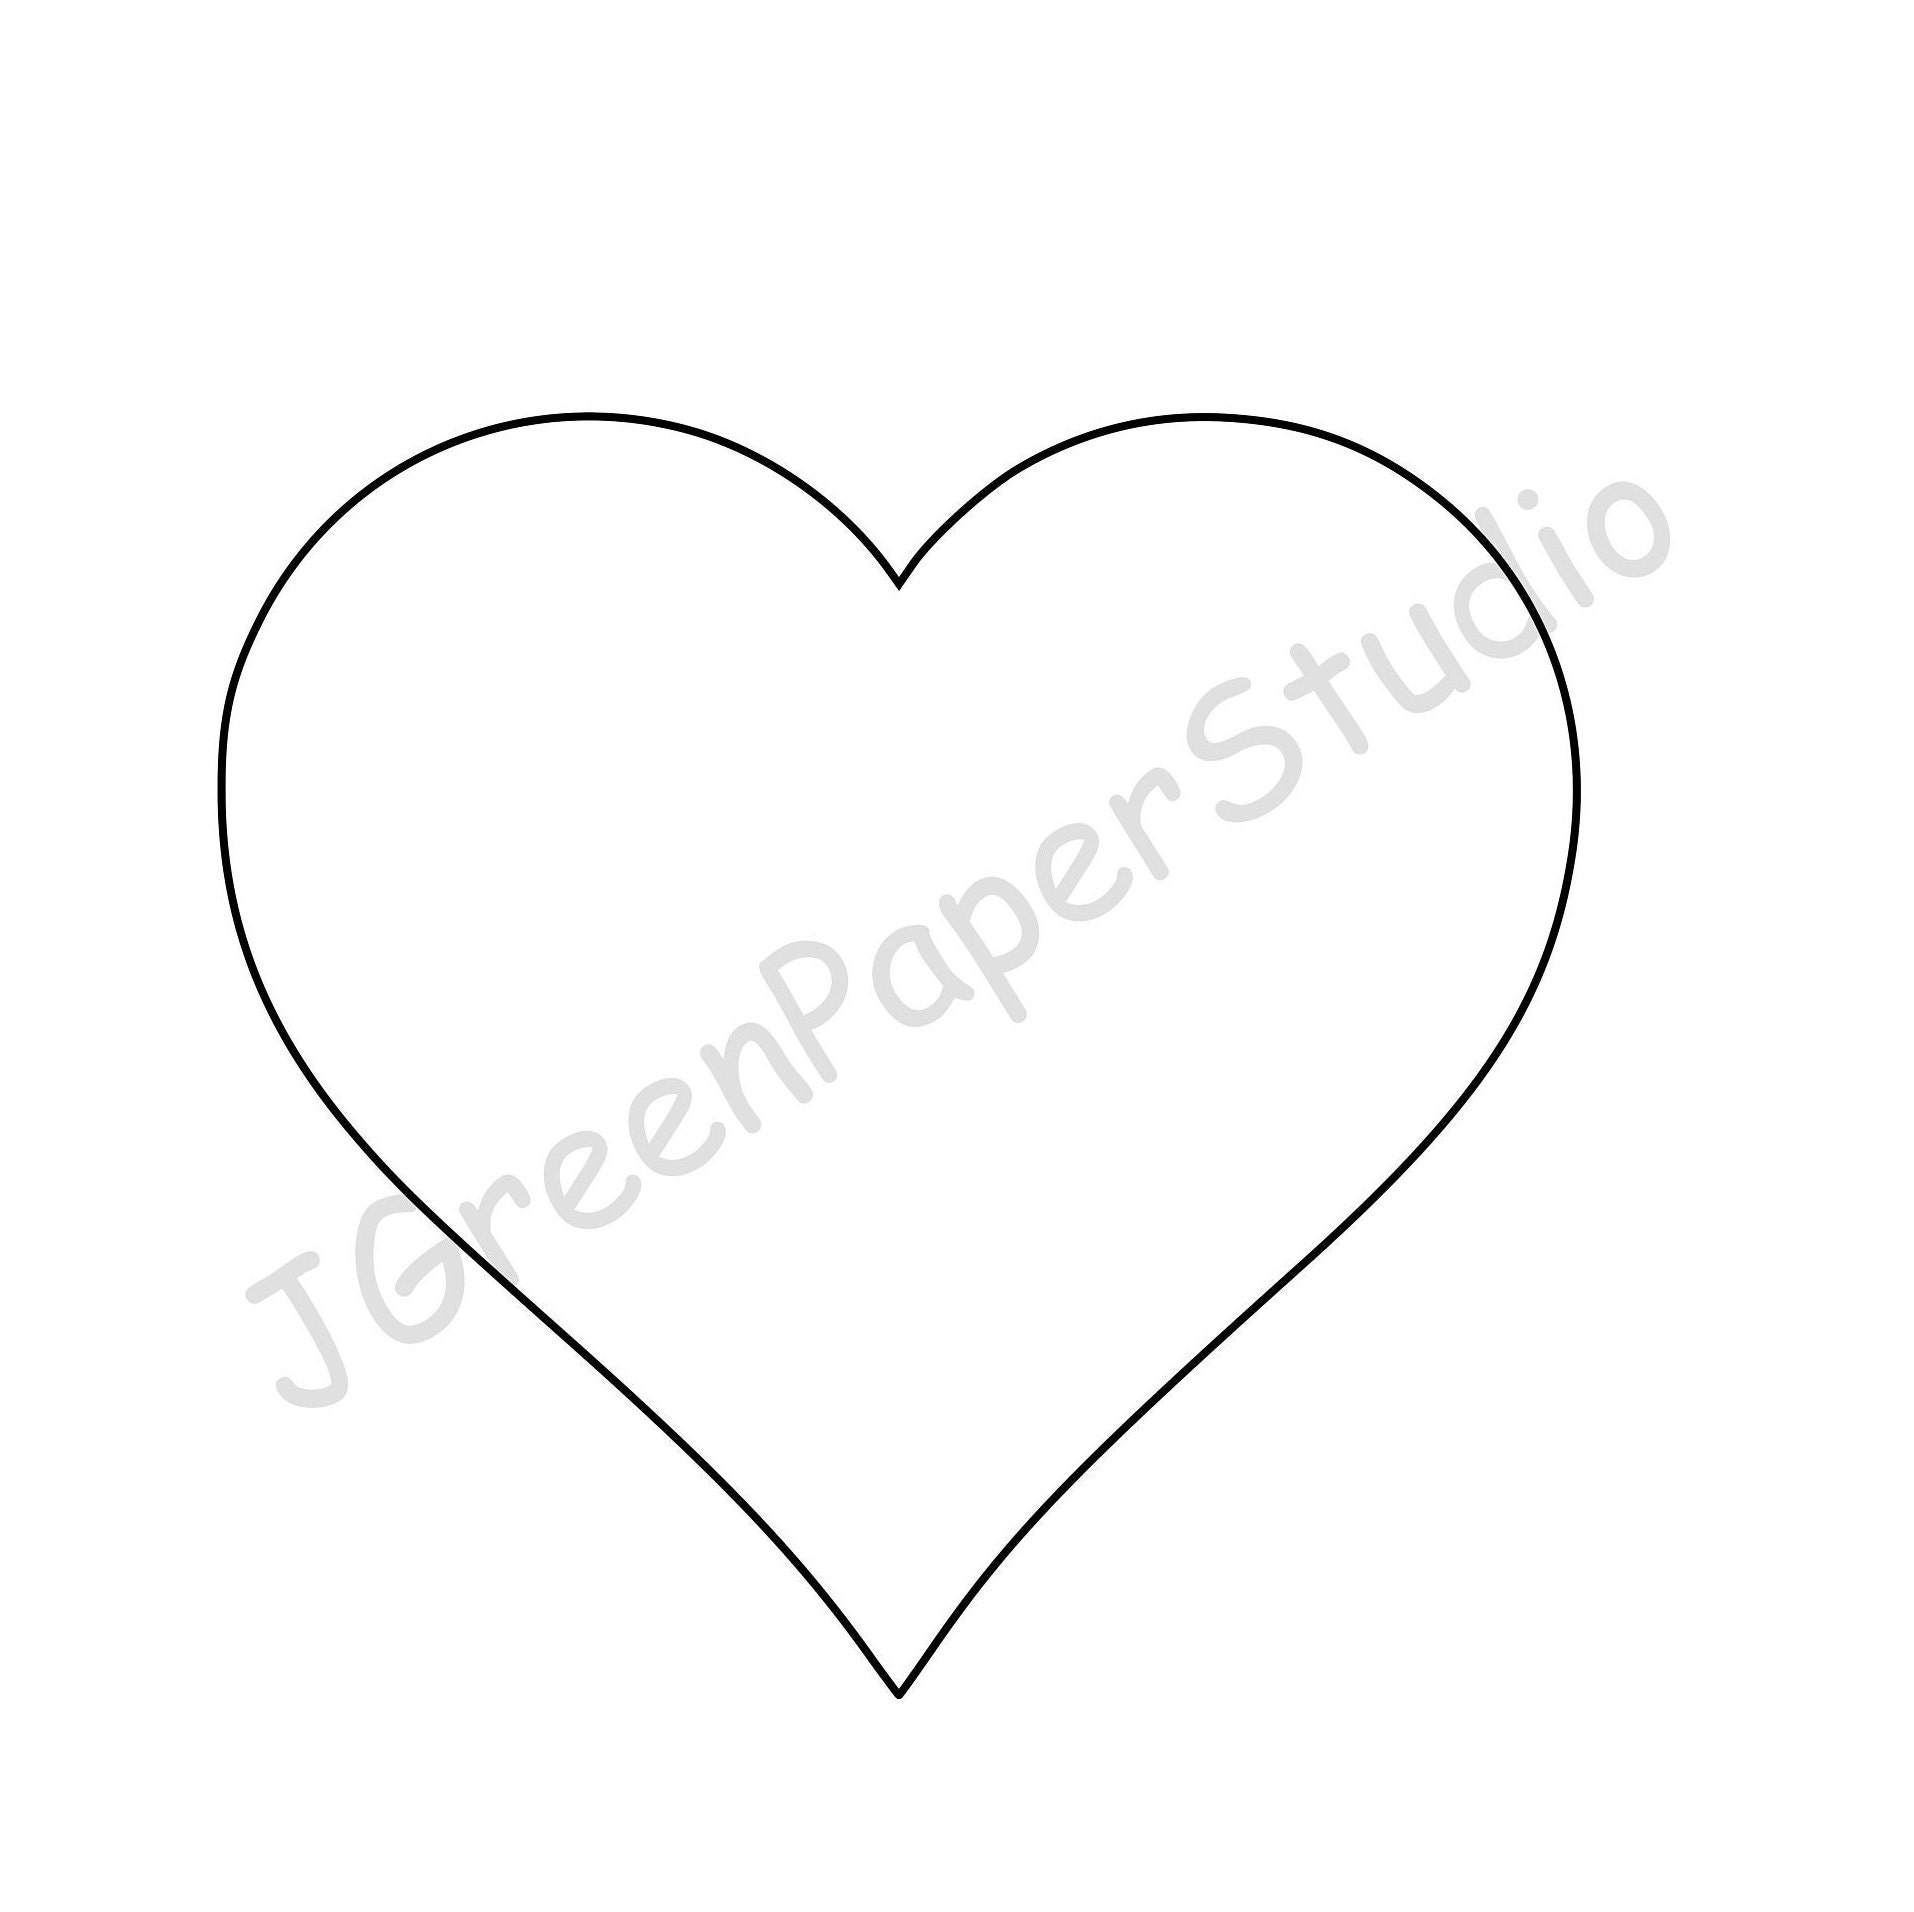 free heart shaped stencils - Google Search  Heart stencil, Heart shapes  template, Printable heart template